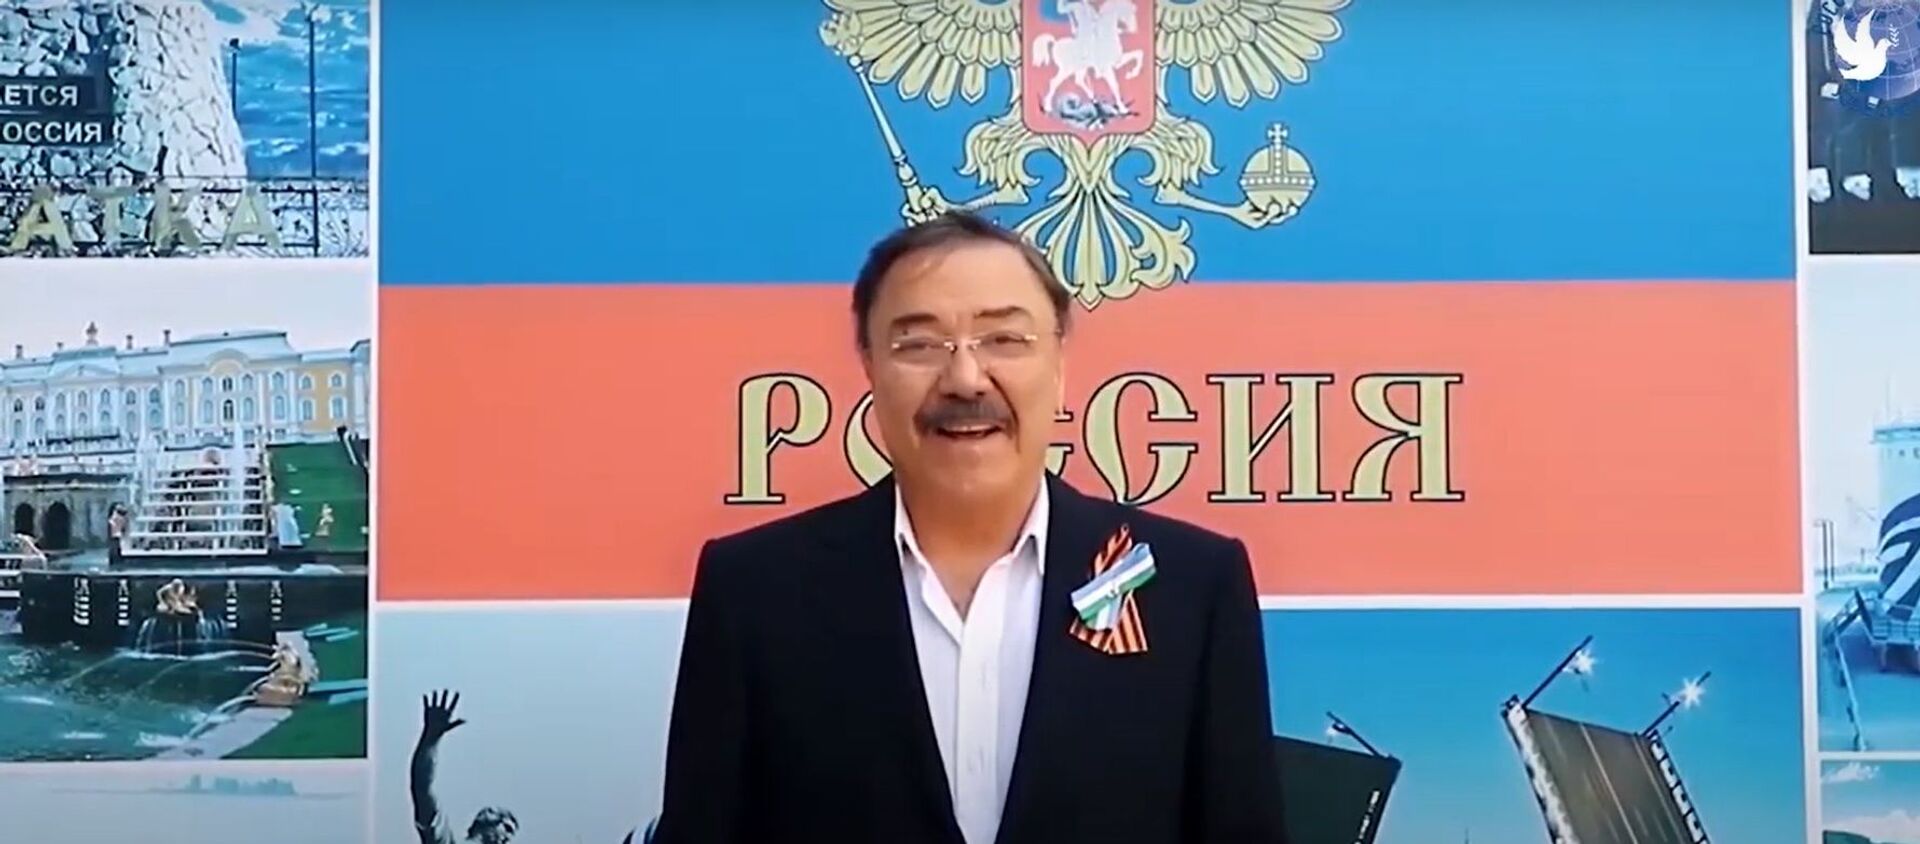 Песня День Победы впервые прозвучала на узбекском языке- видео - Sputnik Узбекистан, 1920, 09.05.2020